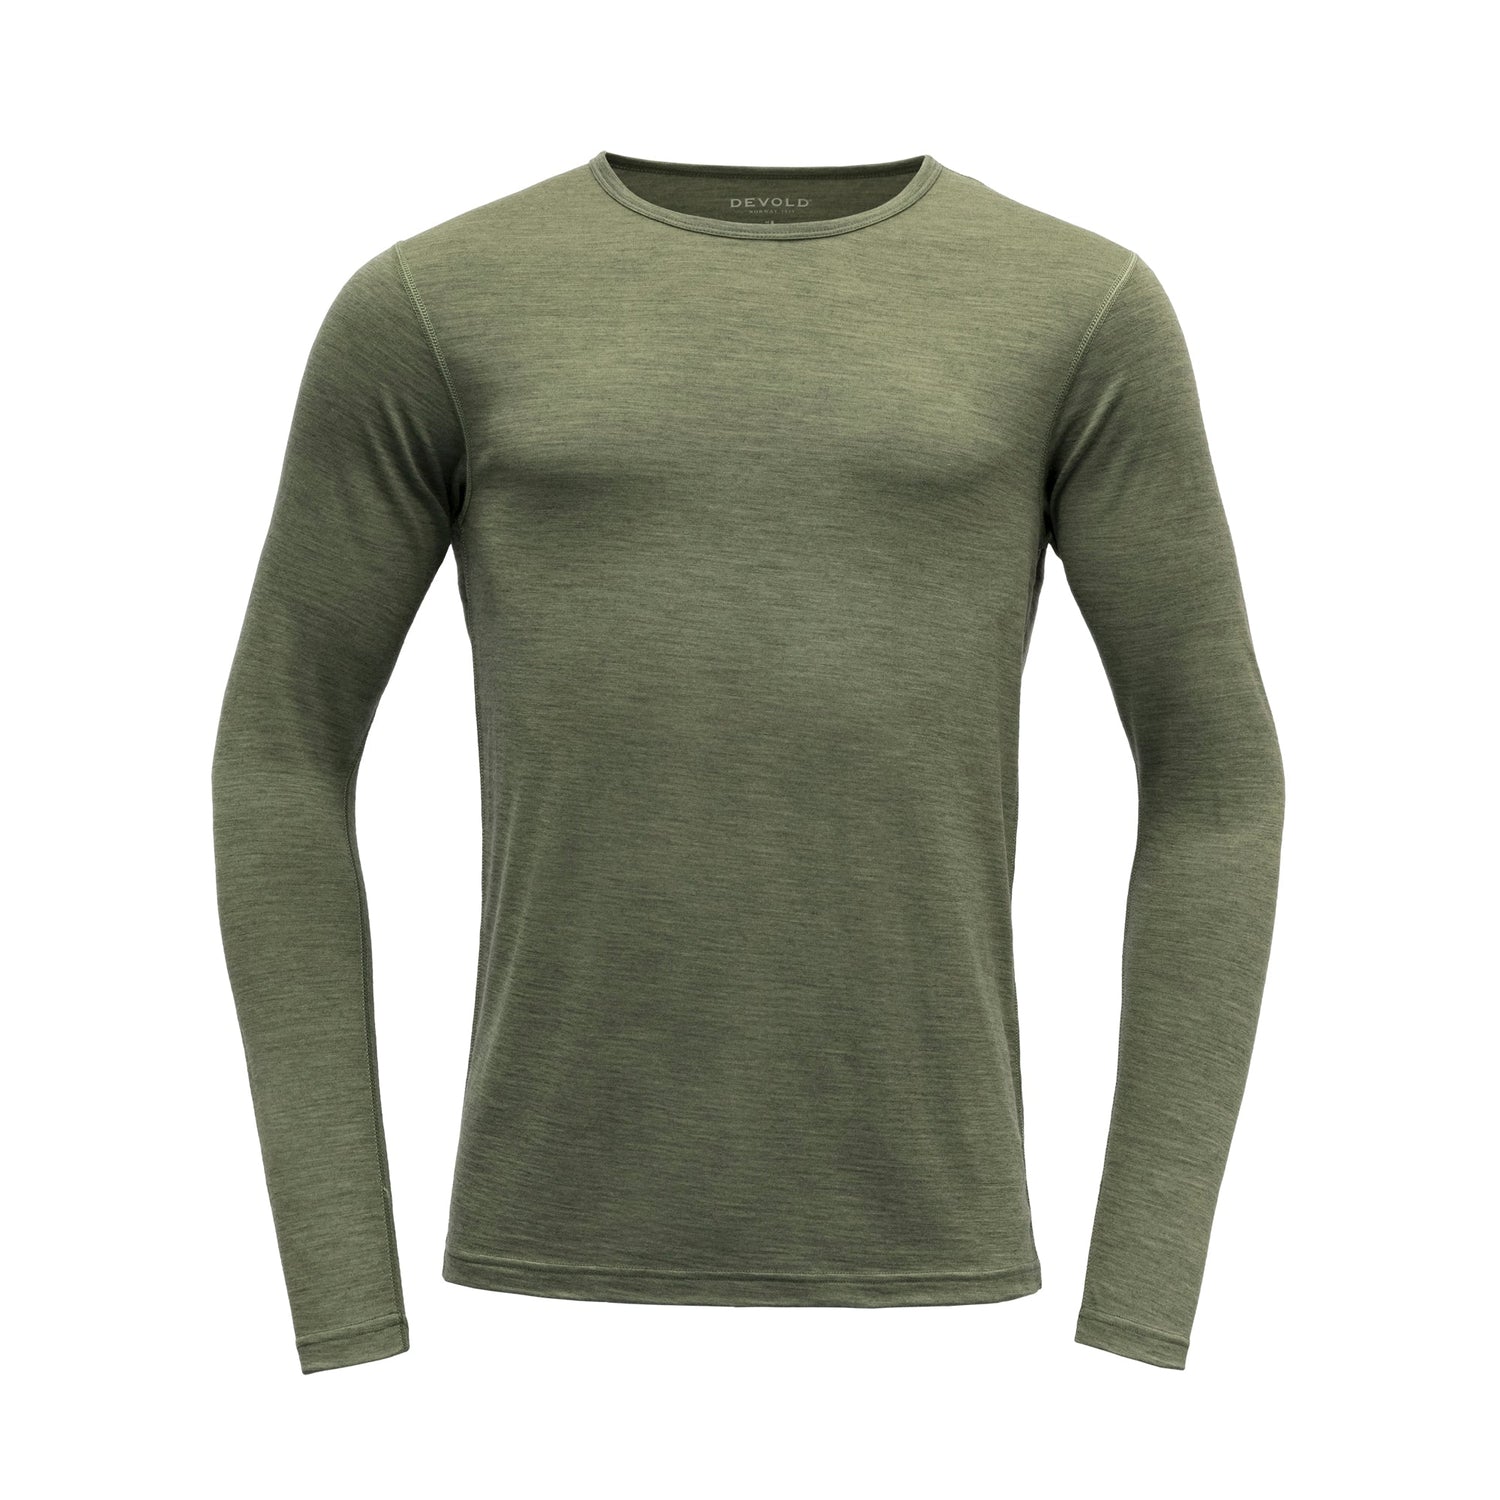 Devold - M's Breeze Shirt - 100% Merino Wool - Weekendbee - sustainable sportswear